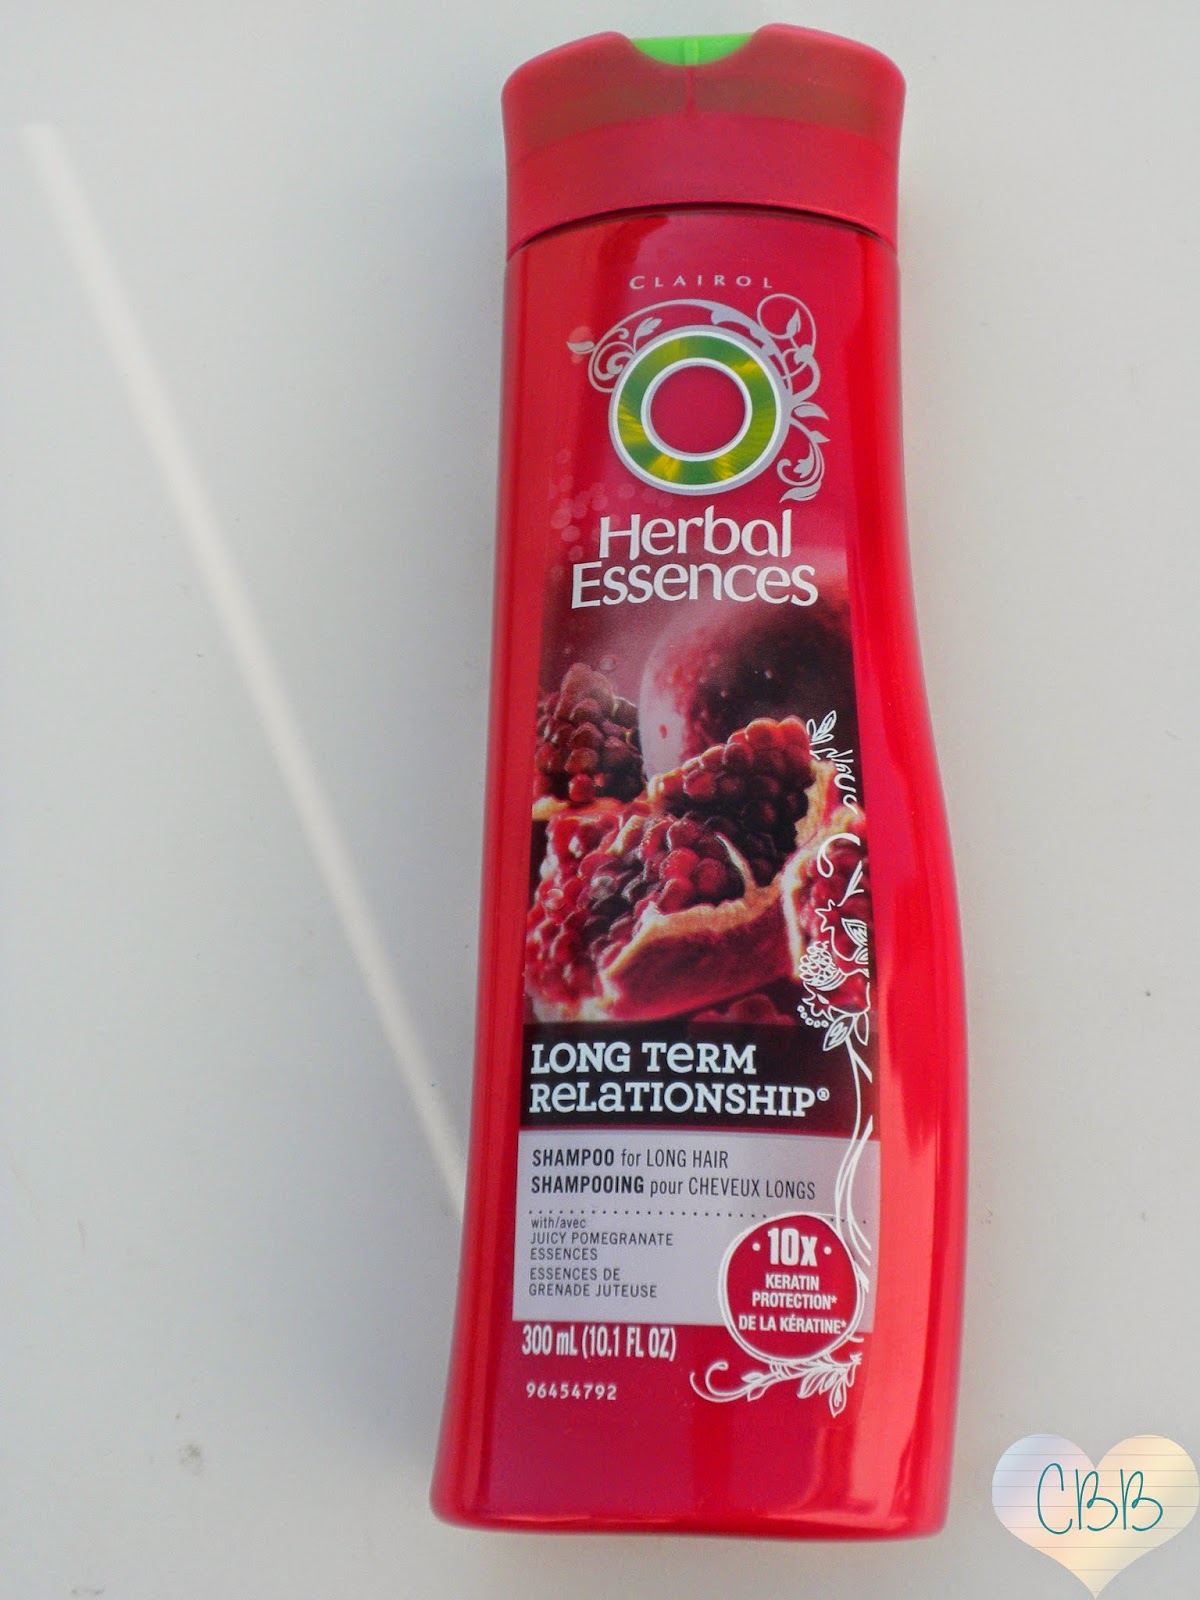 HERBAL ESSENCES Long-Term Relationship Shampoo ($4.29 for 10.1oz)